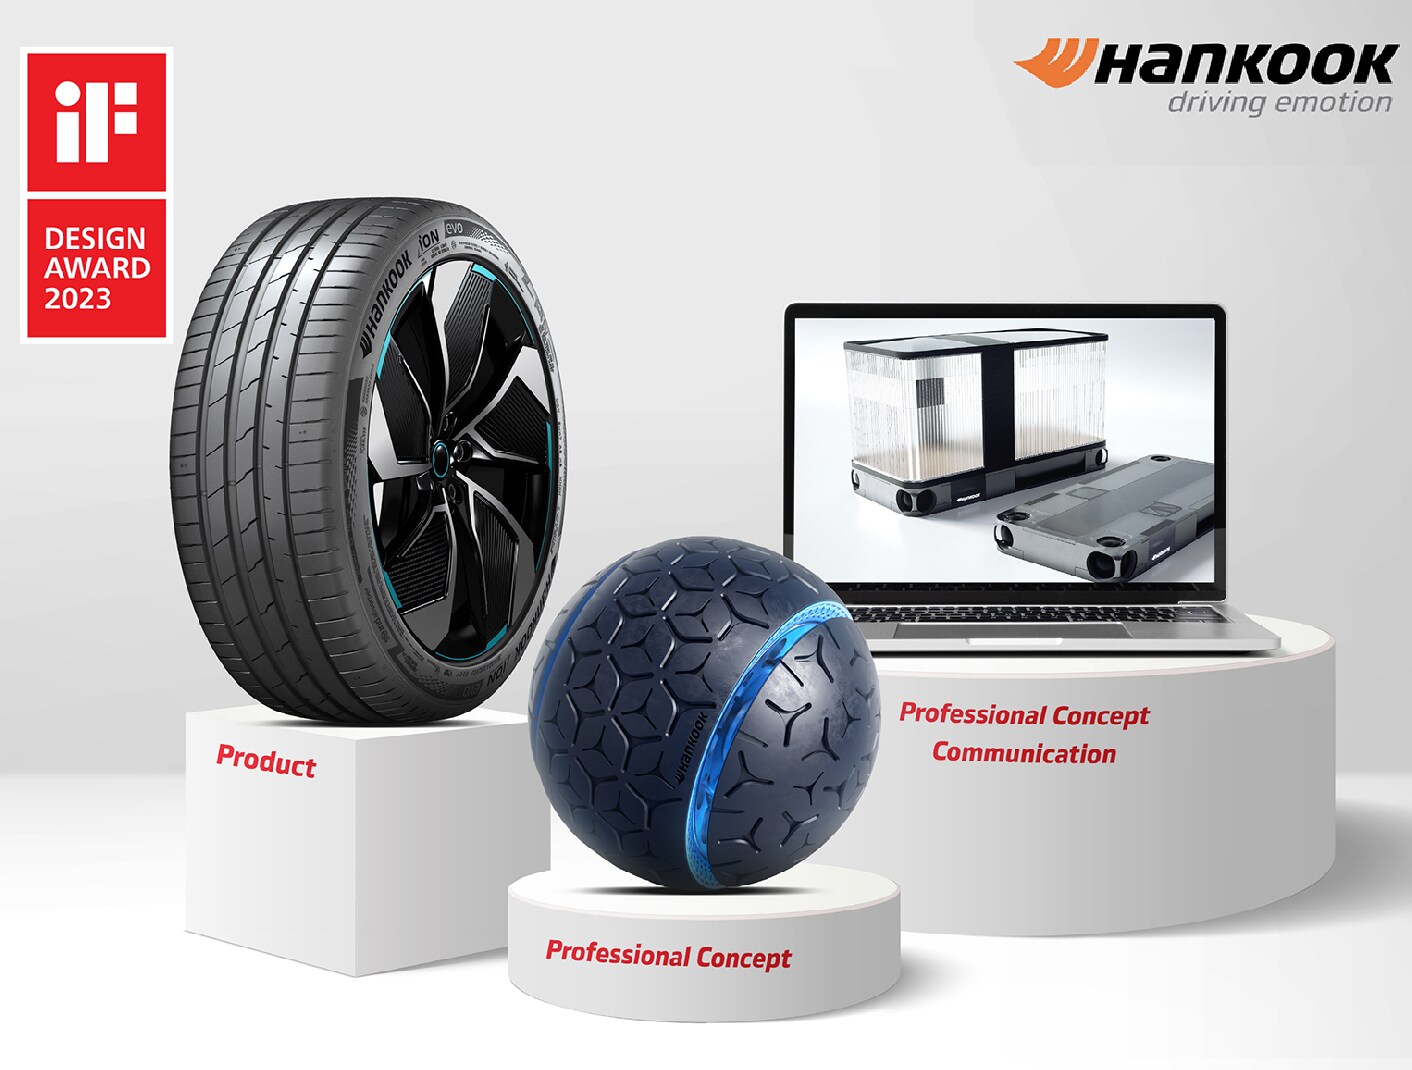 เทคโนโลยีและความเป็นเลิศด้านการออกแบบของ Hankook Tire ได้รับการยกย่องในงาน iF Design Award 2023 